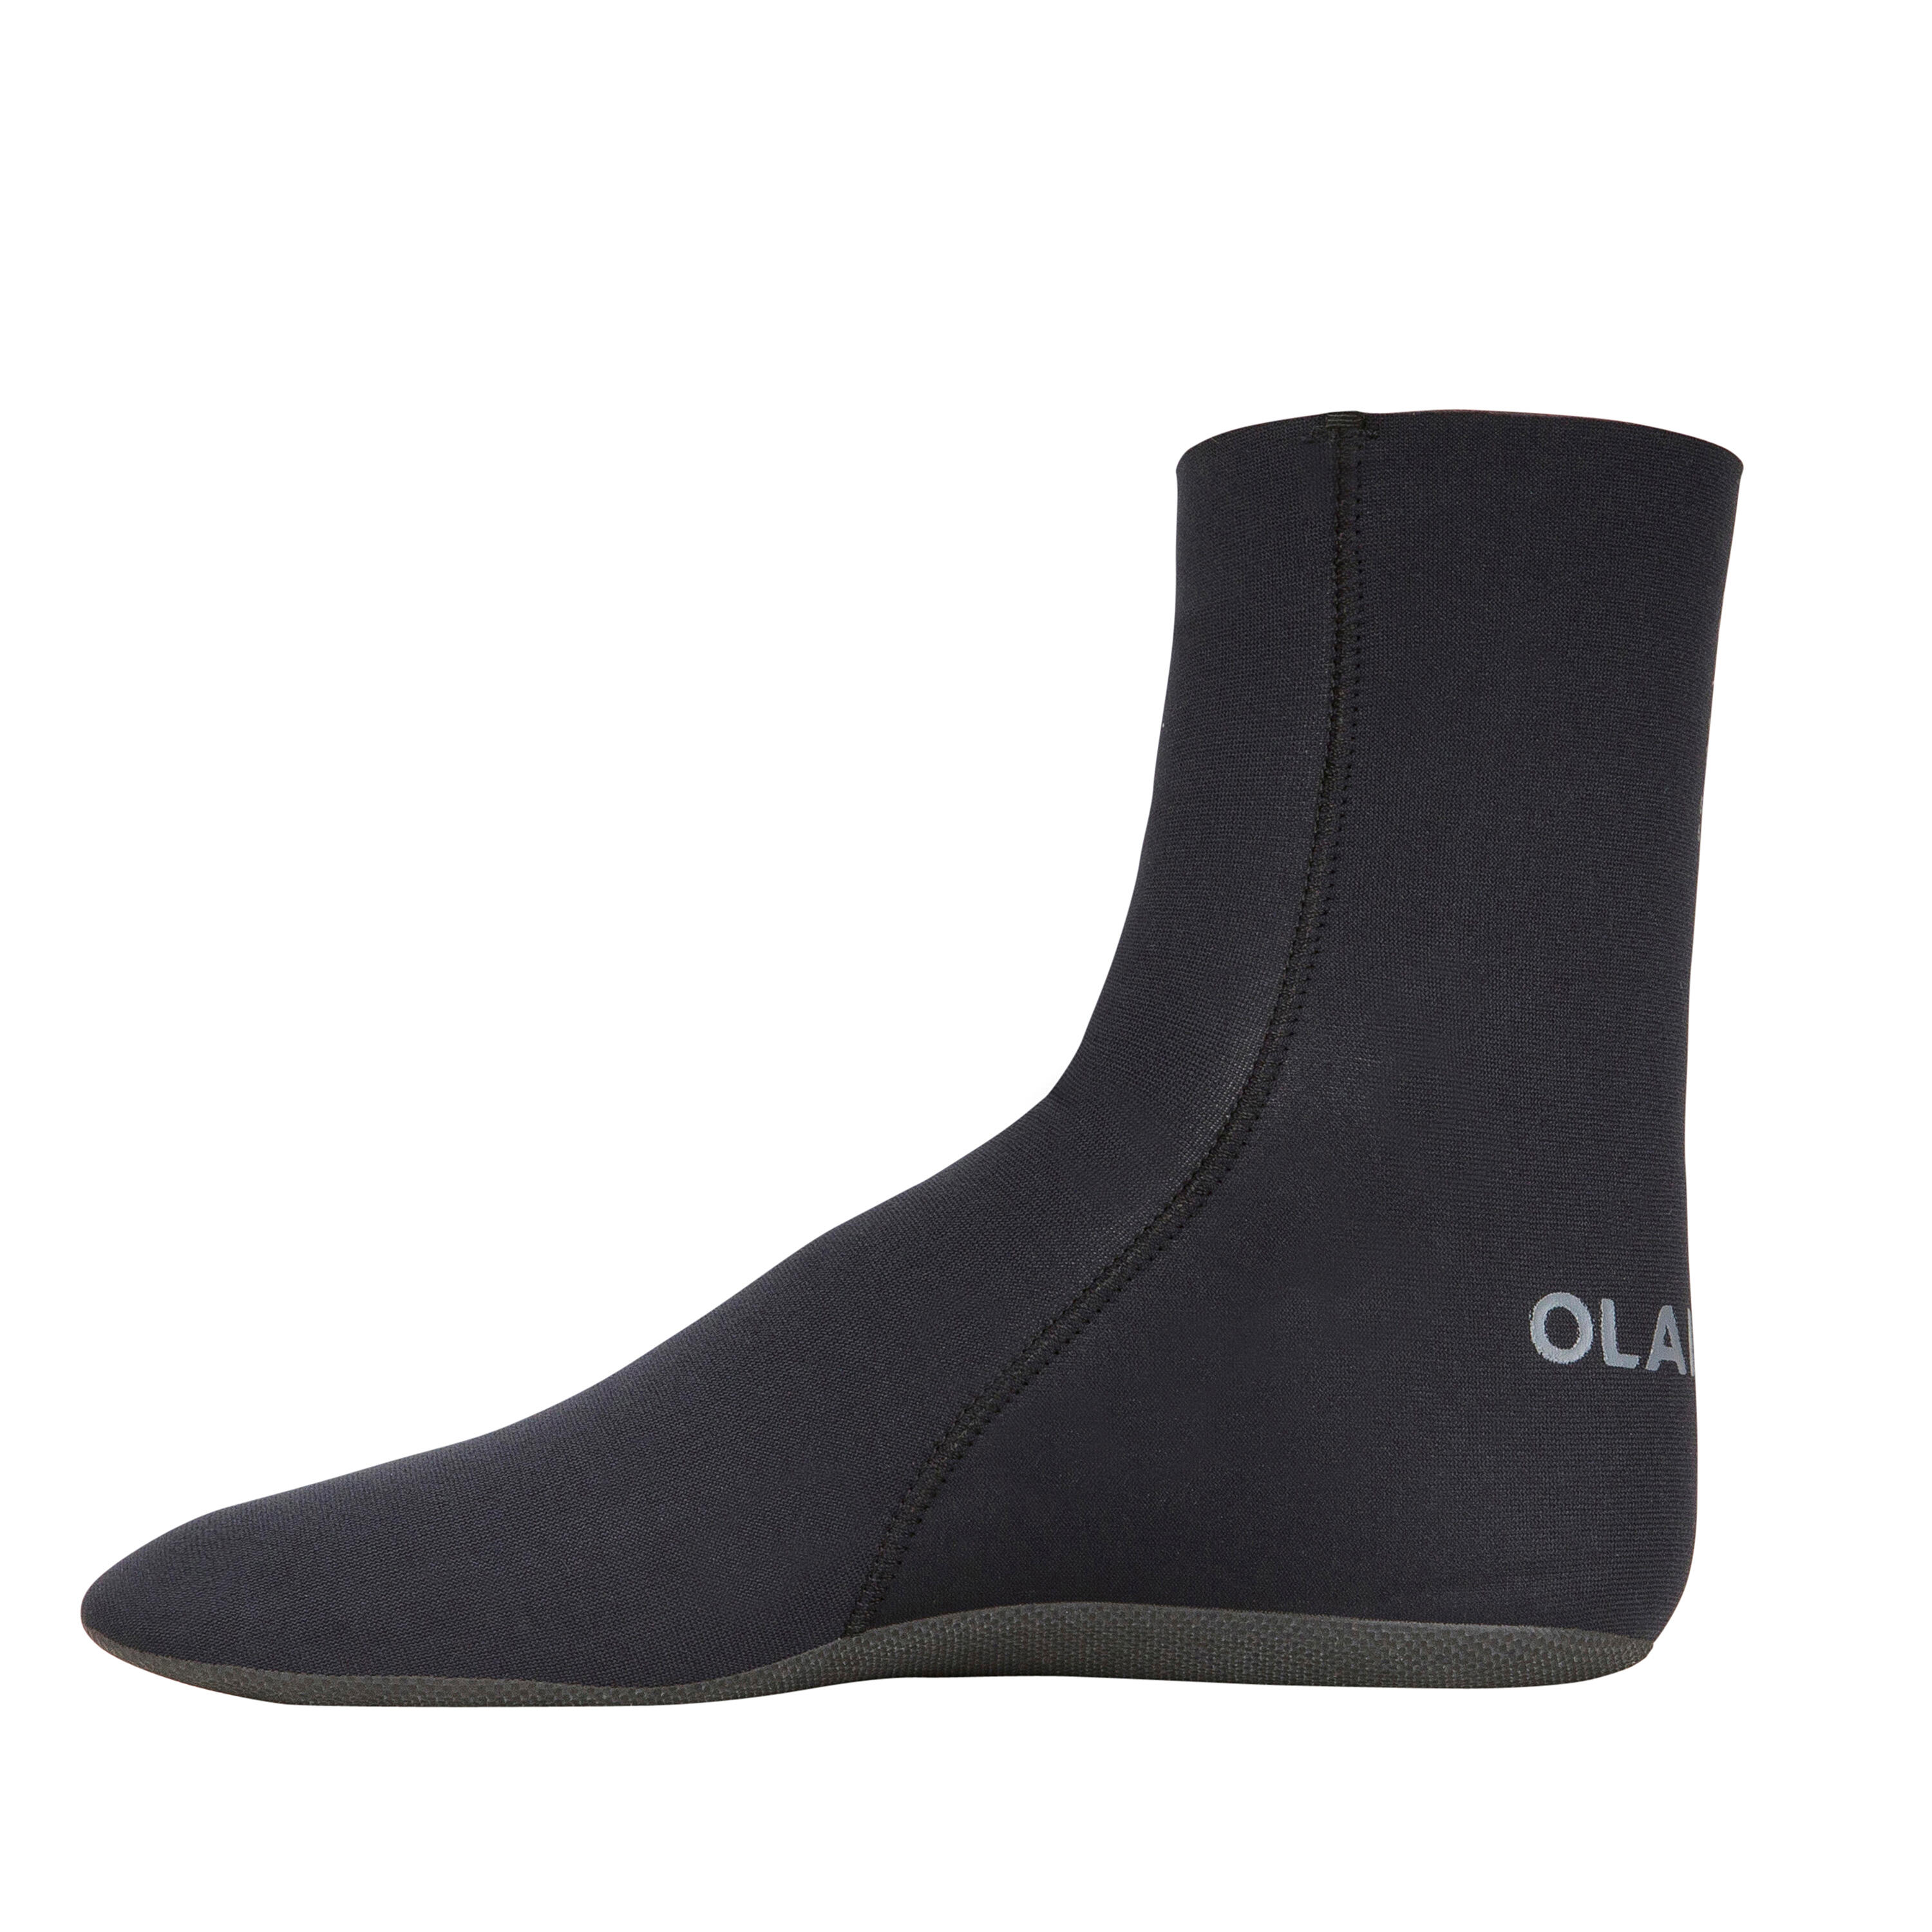 3 mm Neoprene Socks - black - Olaian - Decathlon